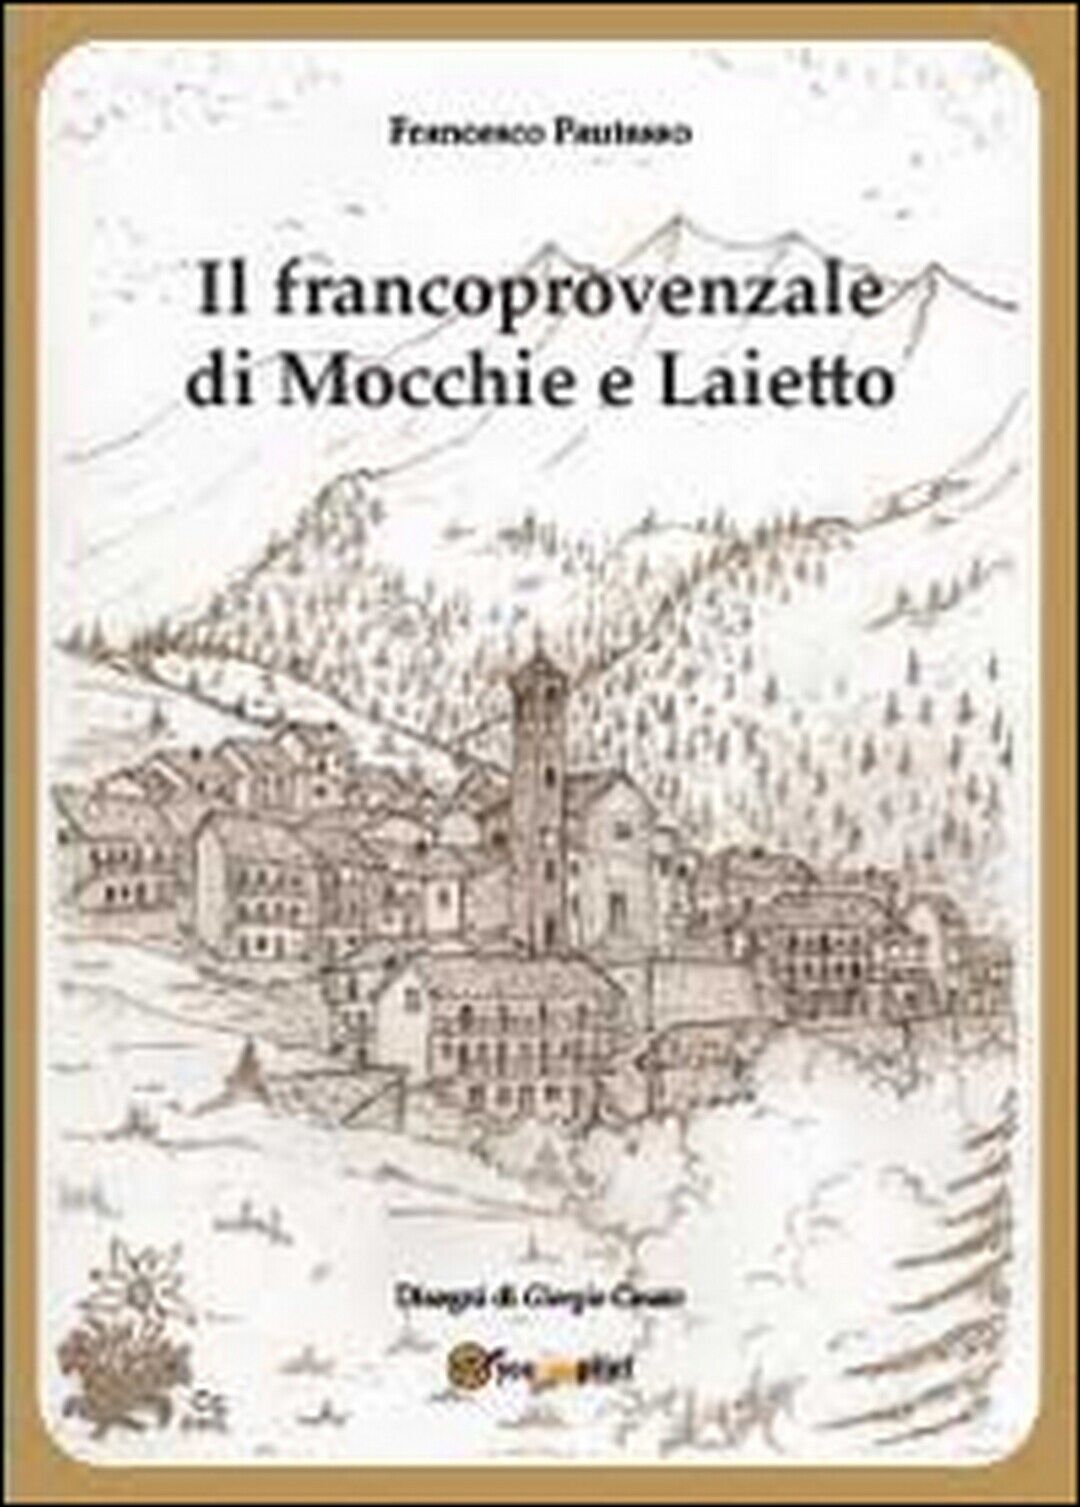 Il francoprovenzale di Mocchie e Laietto, Francesco Pautasso, G. Cinato,  2014